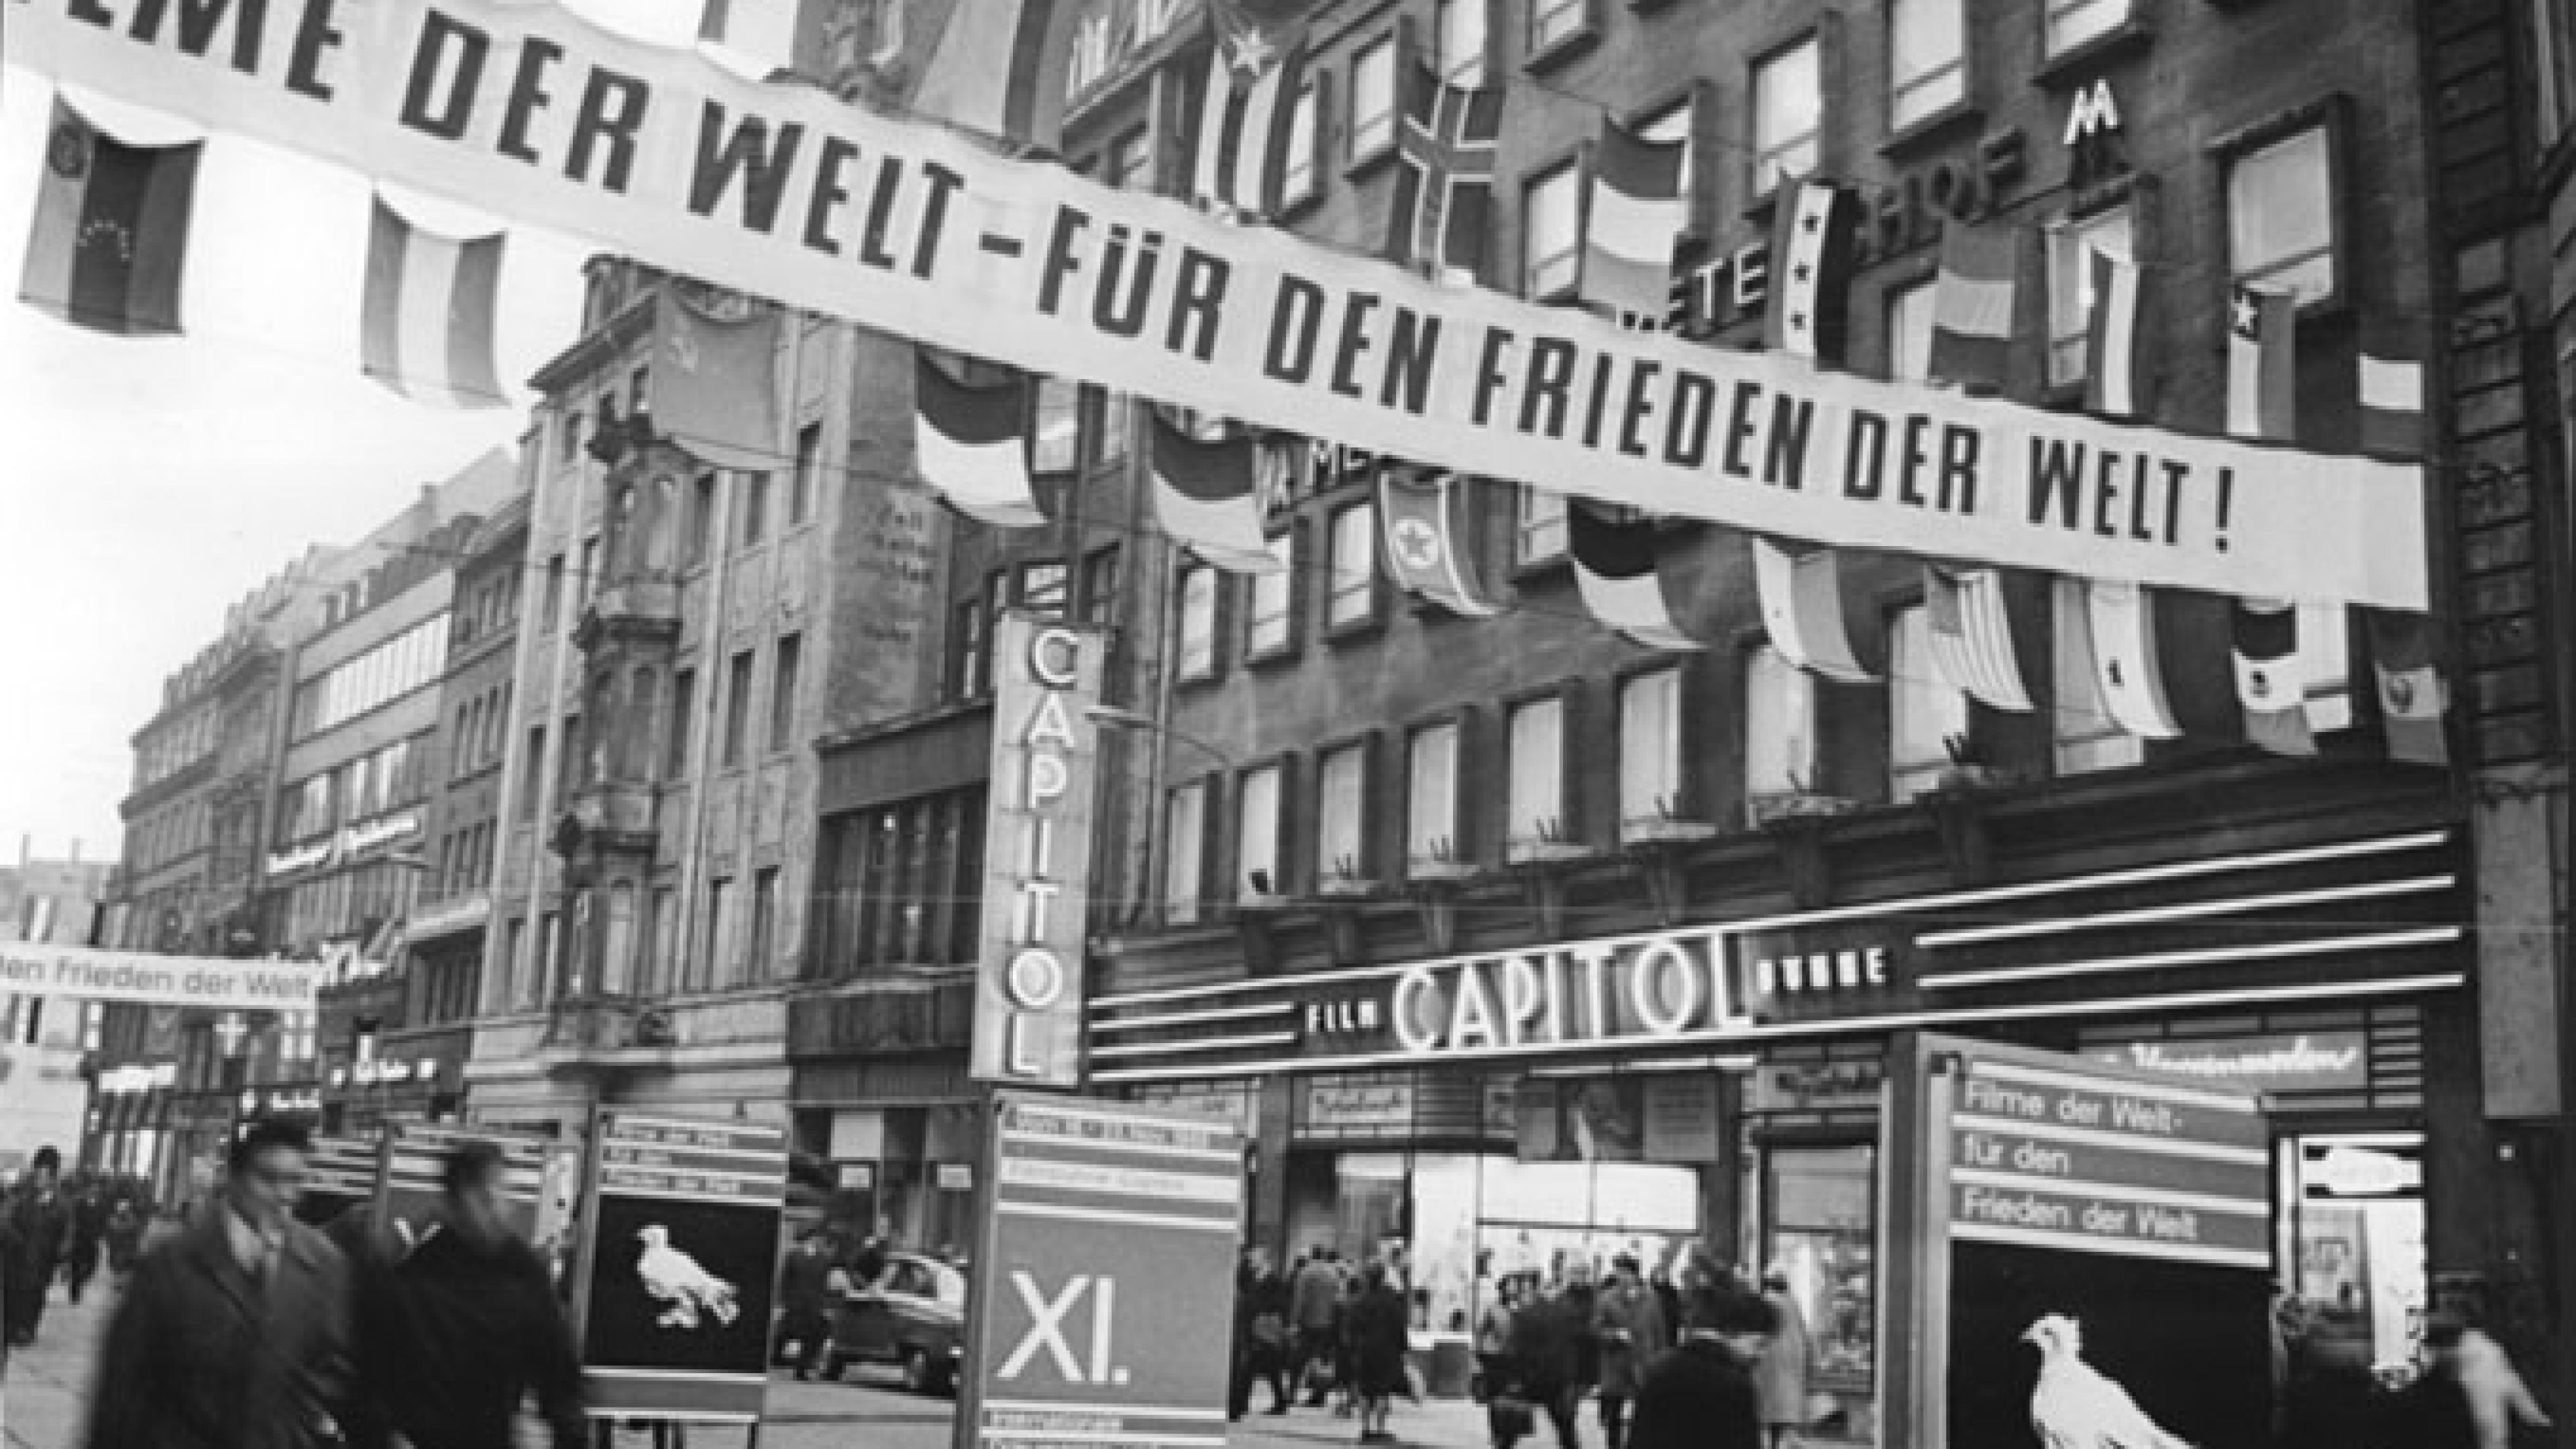 Die Petersstraße in Leipzig. Über der Straße hängt ein Banner mit dem Text "Filme der Welt für den Frieden der Welt".